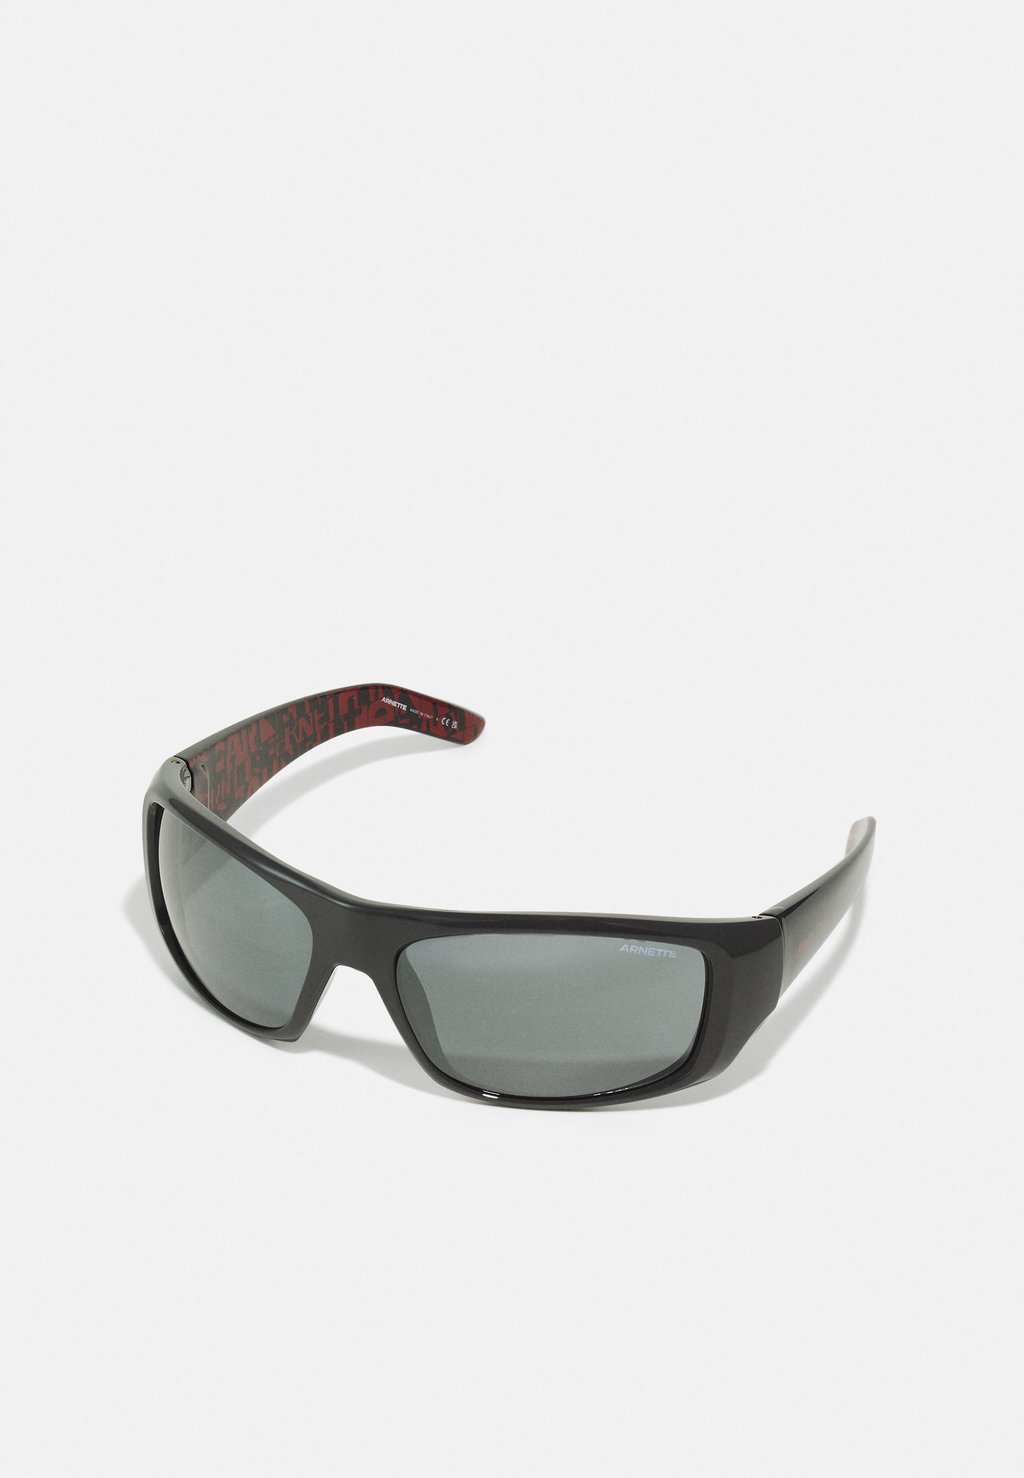 Солнцезащитные очки HOT SHOT Arnette, цвет dark grey